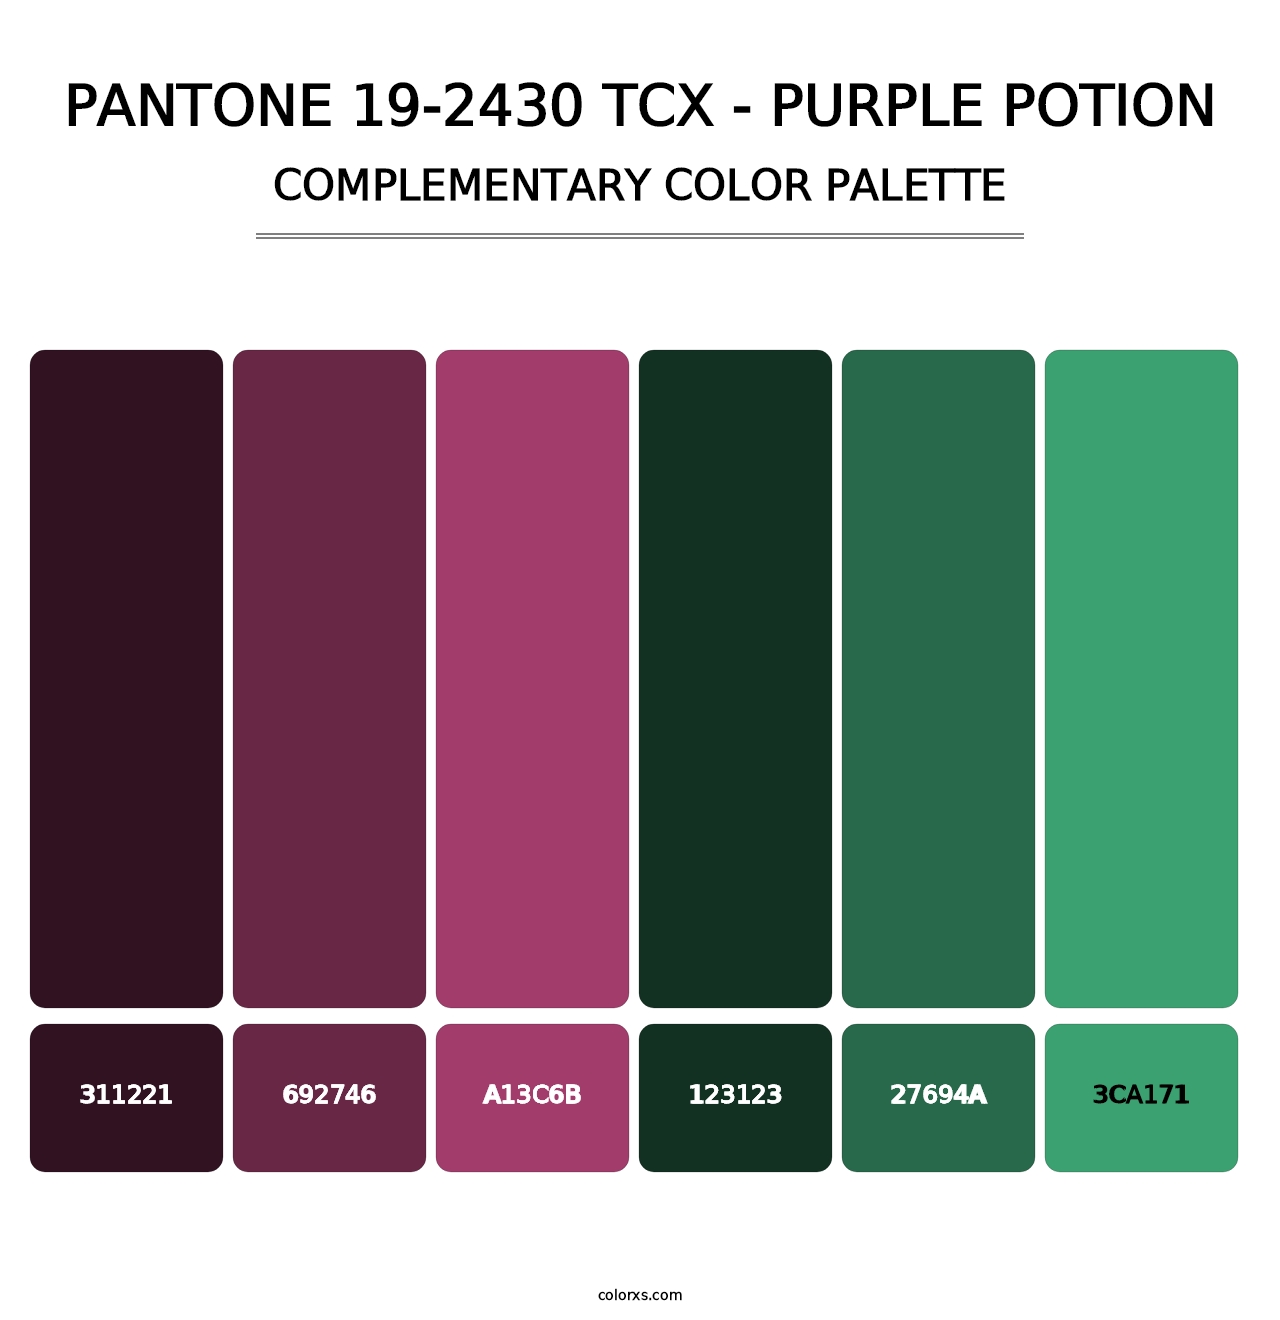 PANTONE 19-2430 TCX - Purple Potion - Complementary Color Palette